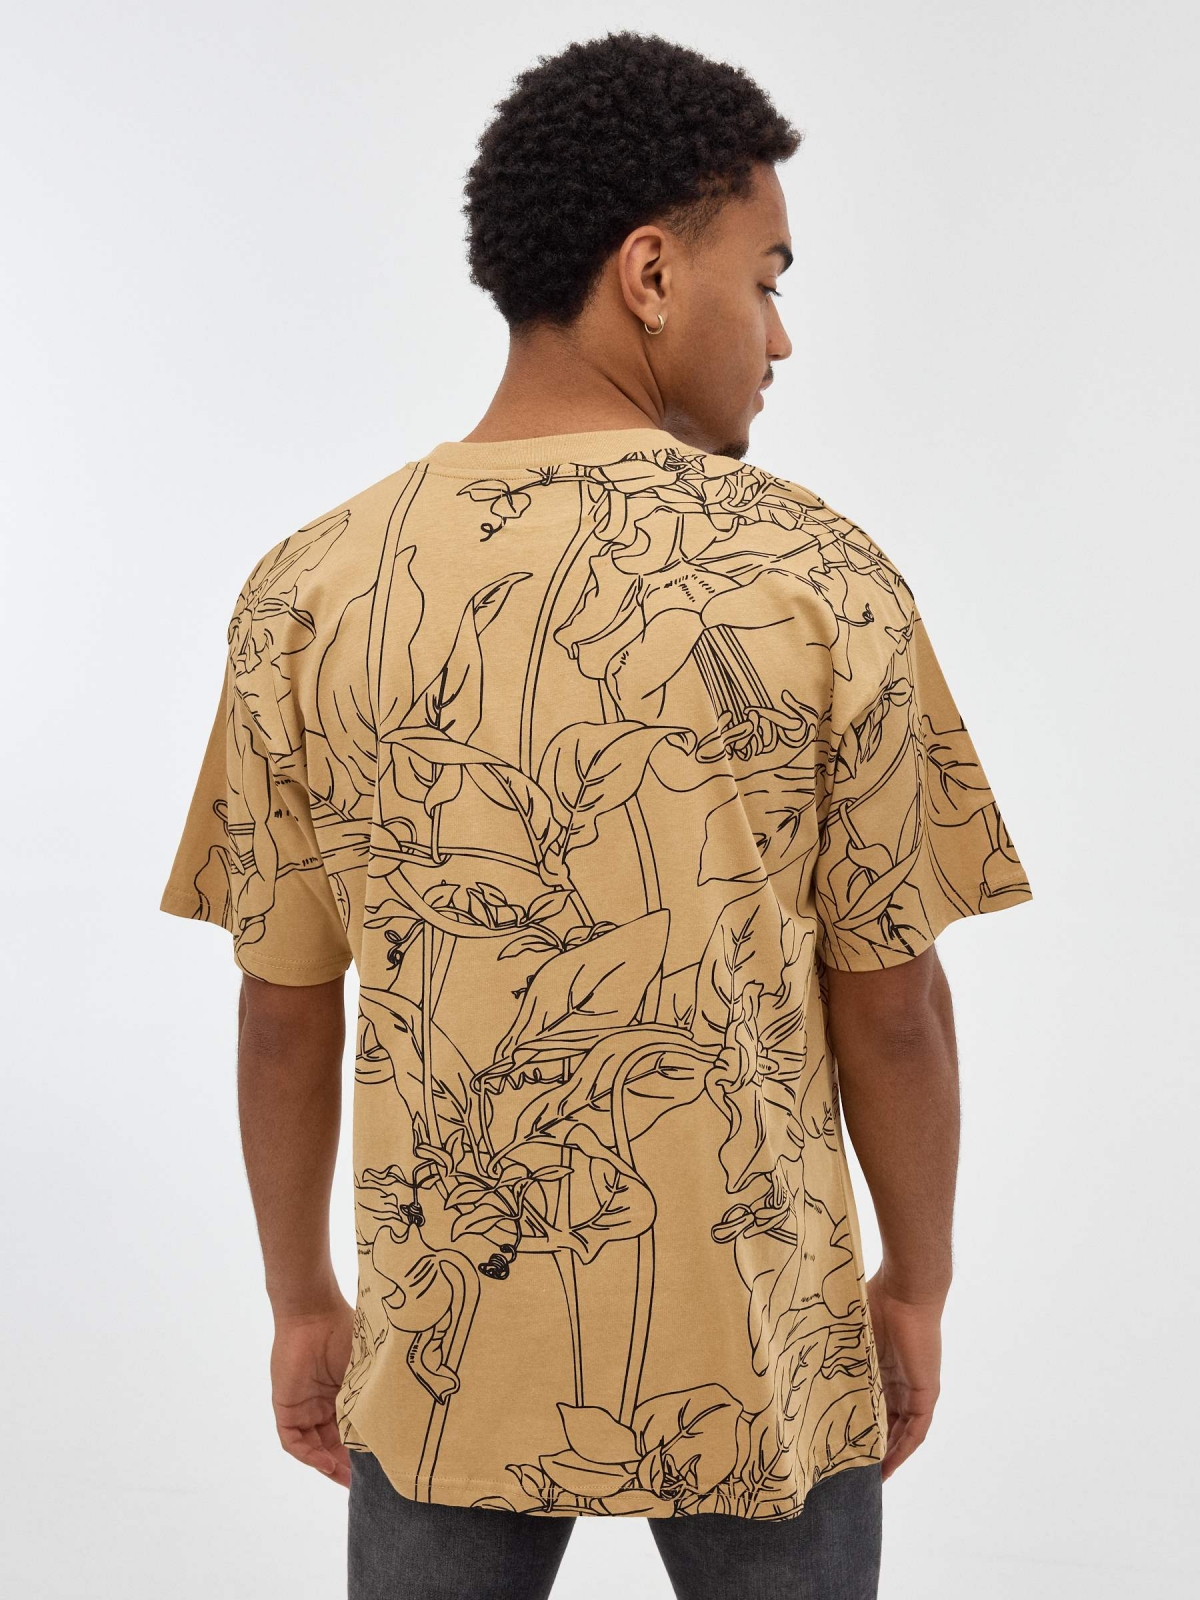 Camiseta estampado tropical marrón tierra vista media trasera